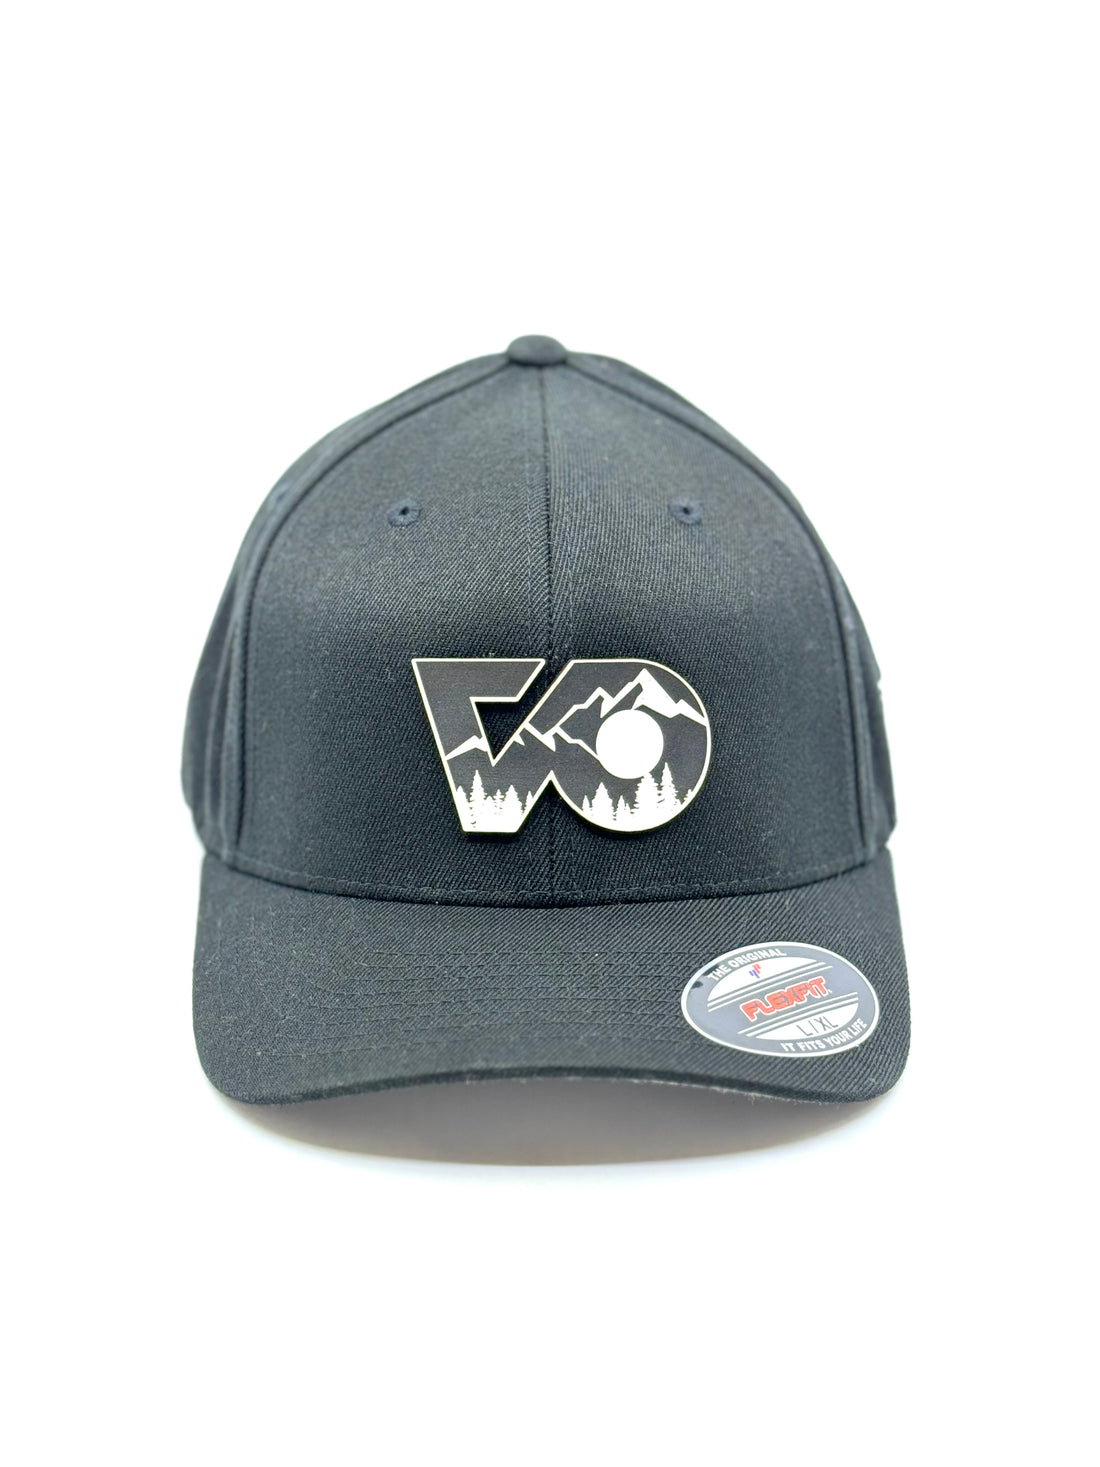 FLEXFIT VO Hats